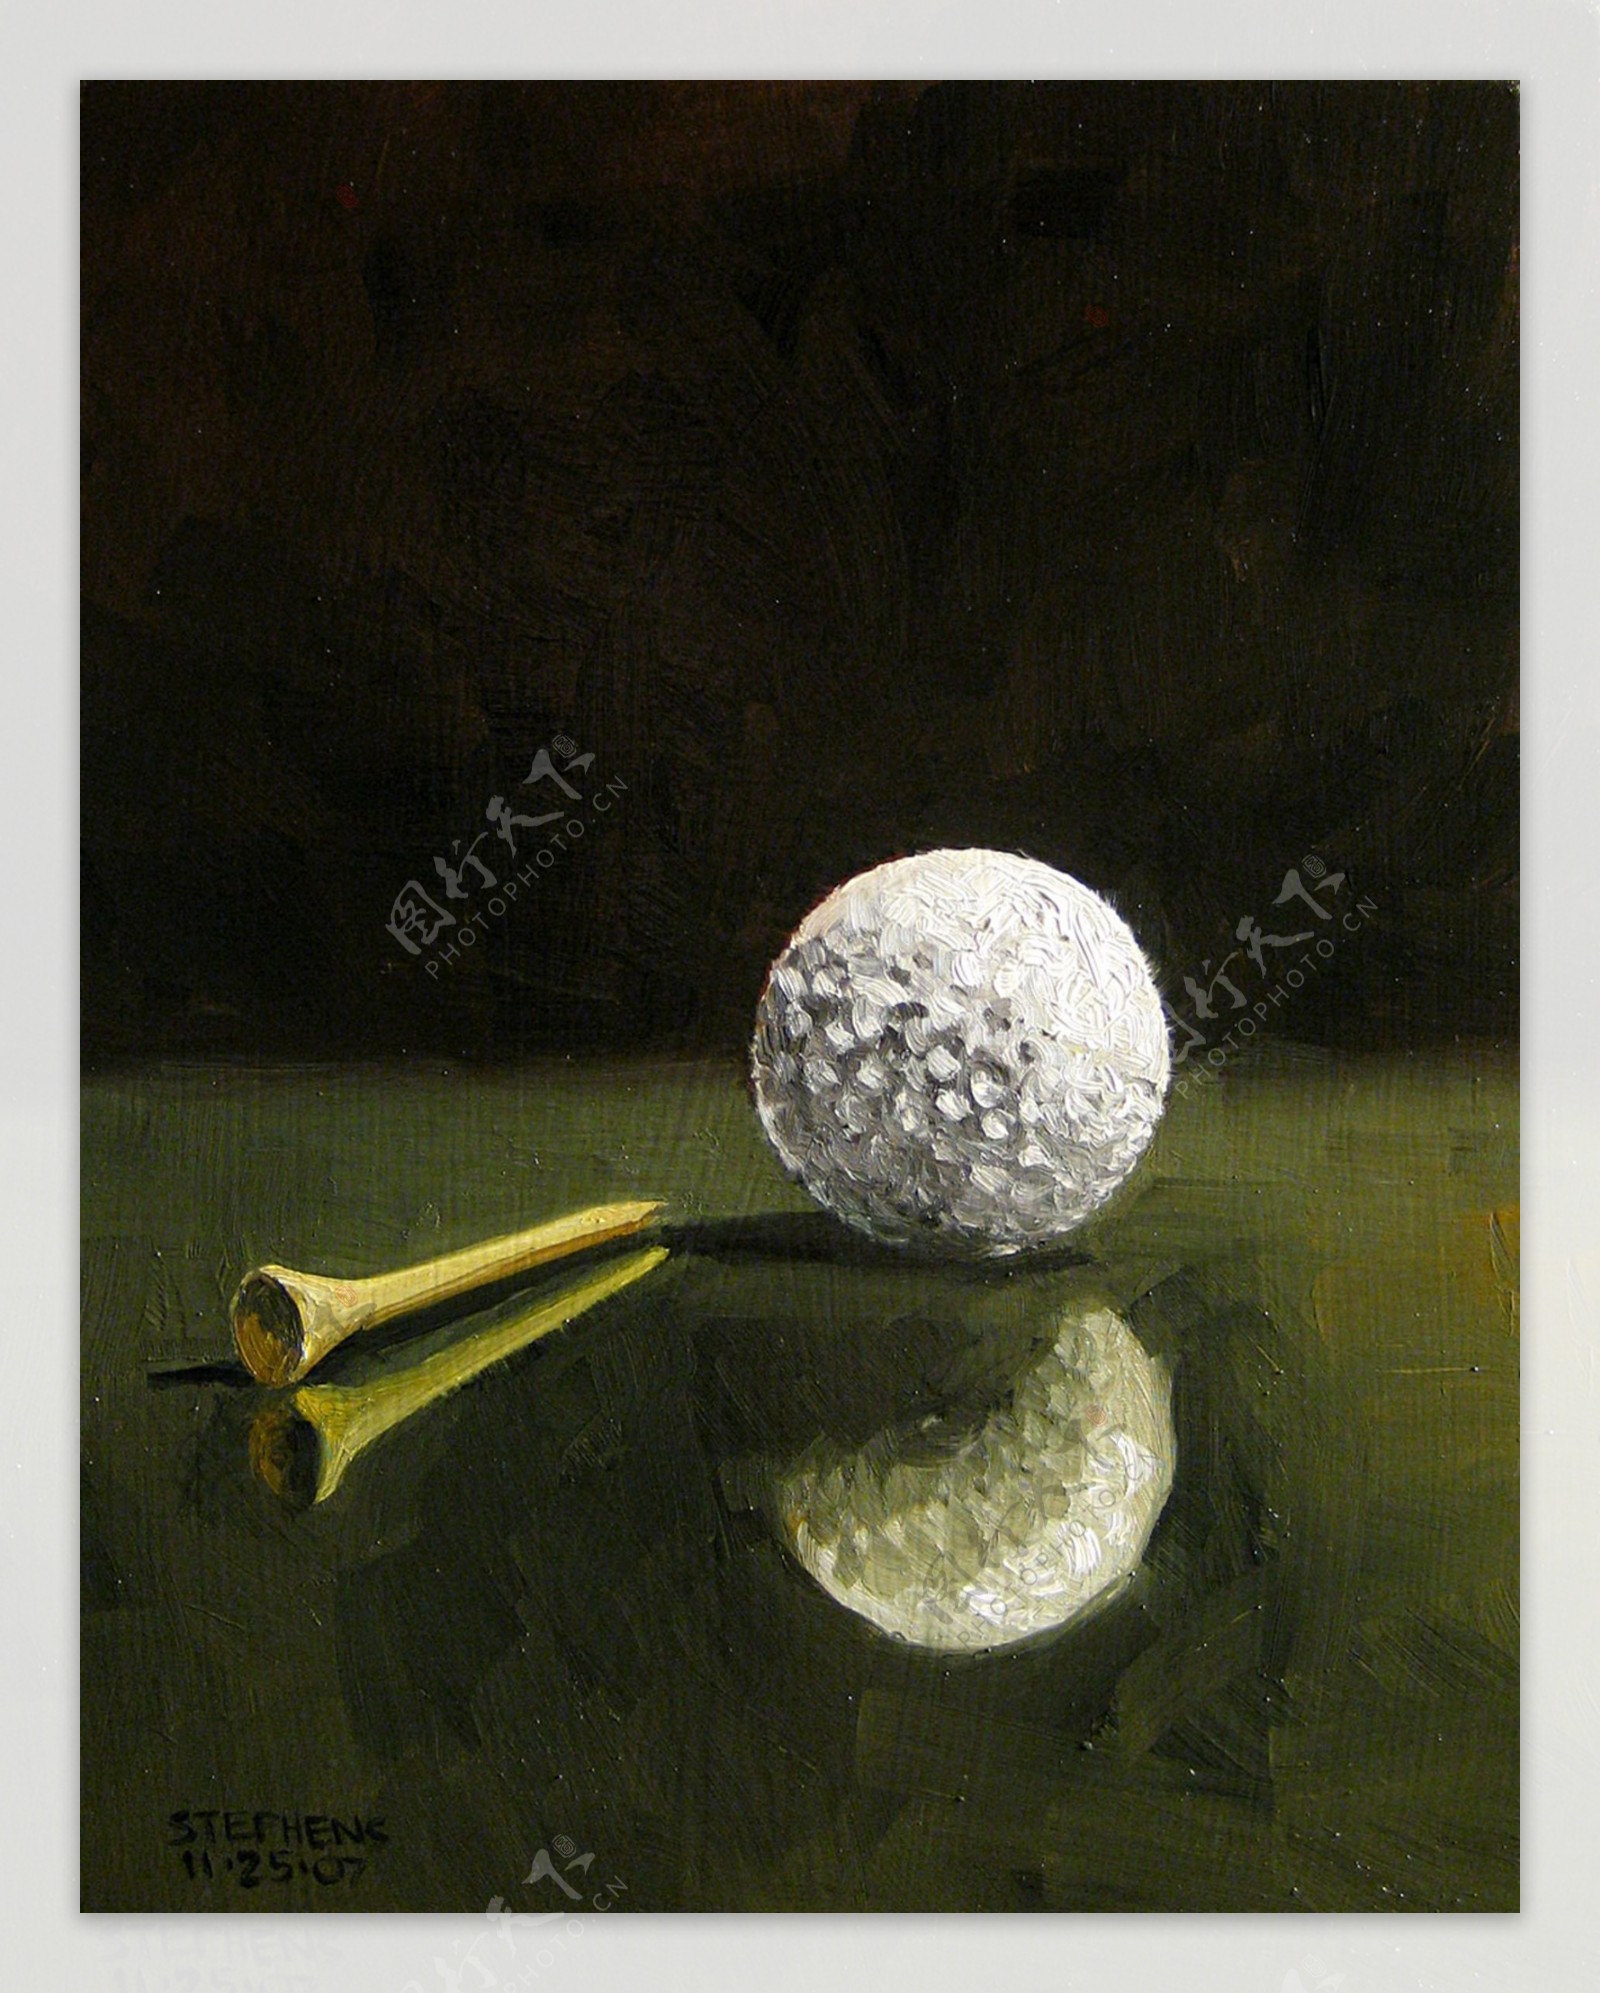 高尔夫艺术图片